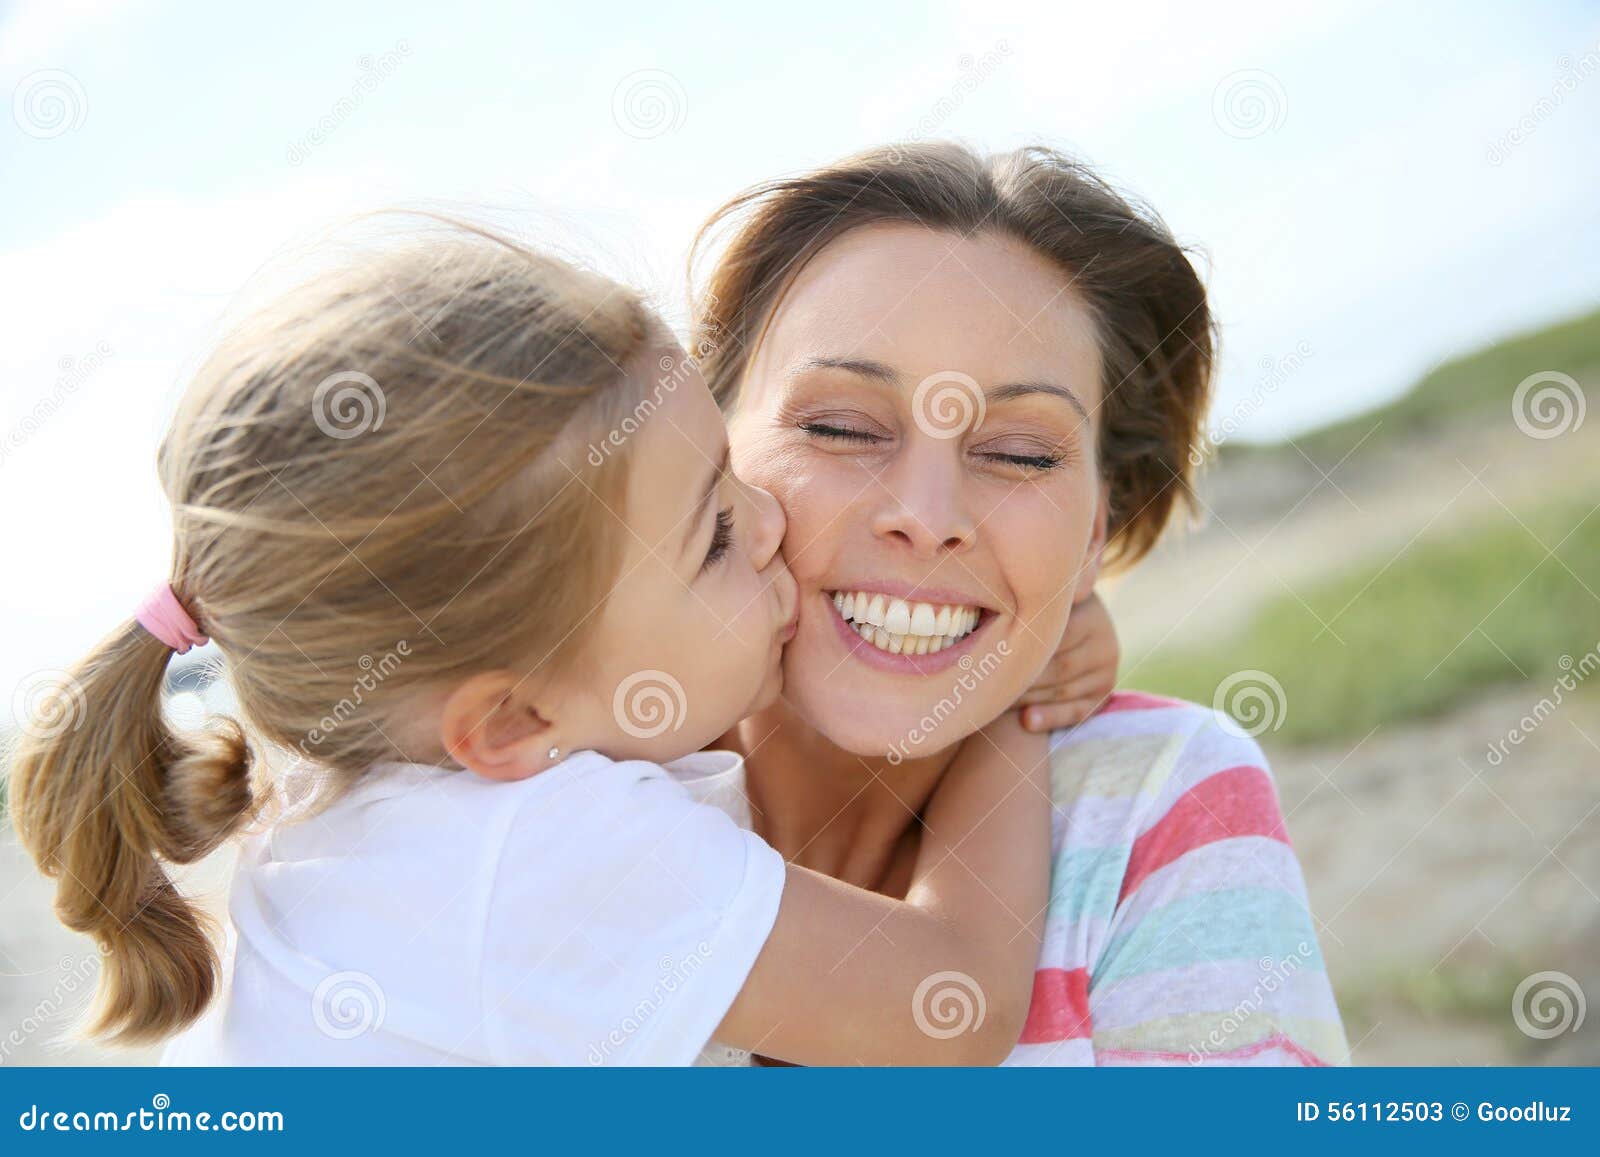 Маме лижет ее подруга. Девочка целует маму. Девочка целует маму в щеку. Две девочки целуют папу. Мама целует папу в щеку.